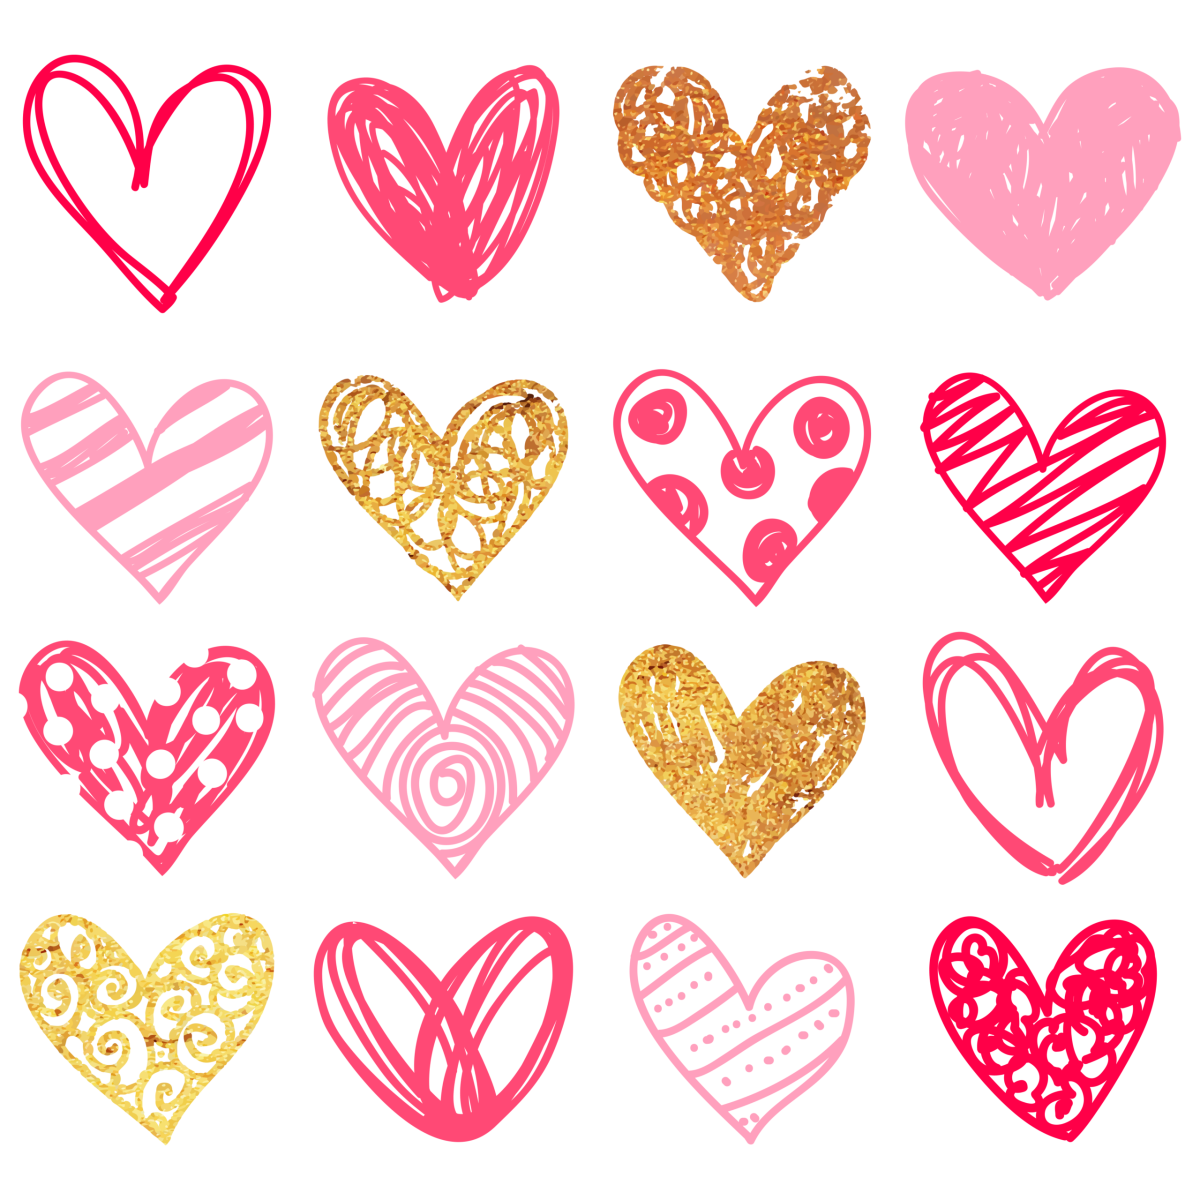 Various drawn hearts